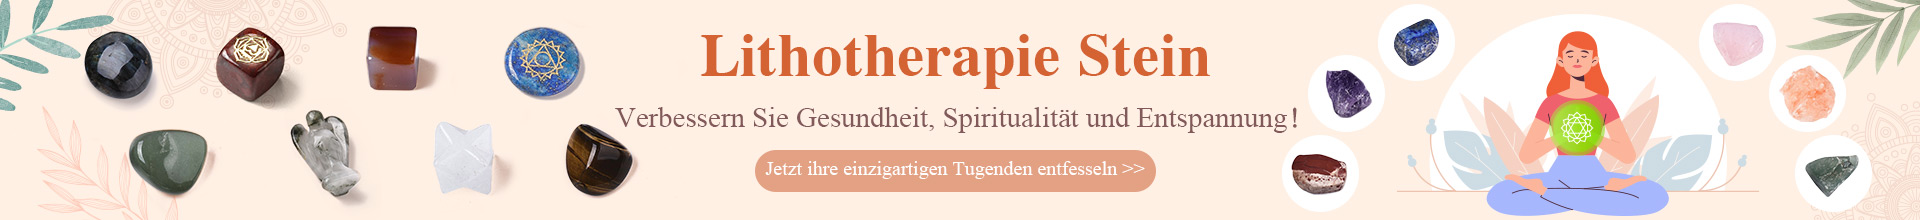 Lithotherapie Stein  Verbessern Sie Gesundheit, Spiritualität und Entspannung！ bis zu -75% Jetzt ihre einzigartigen Tugenden entfesseln >>